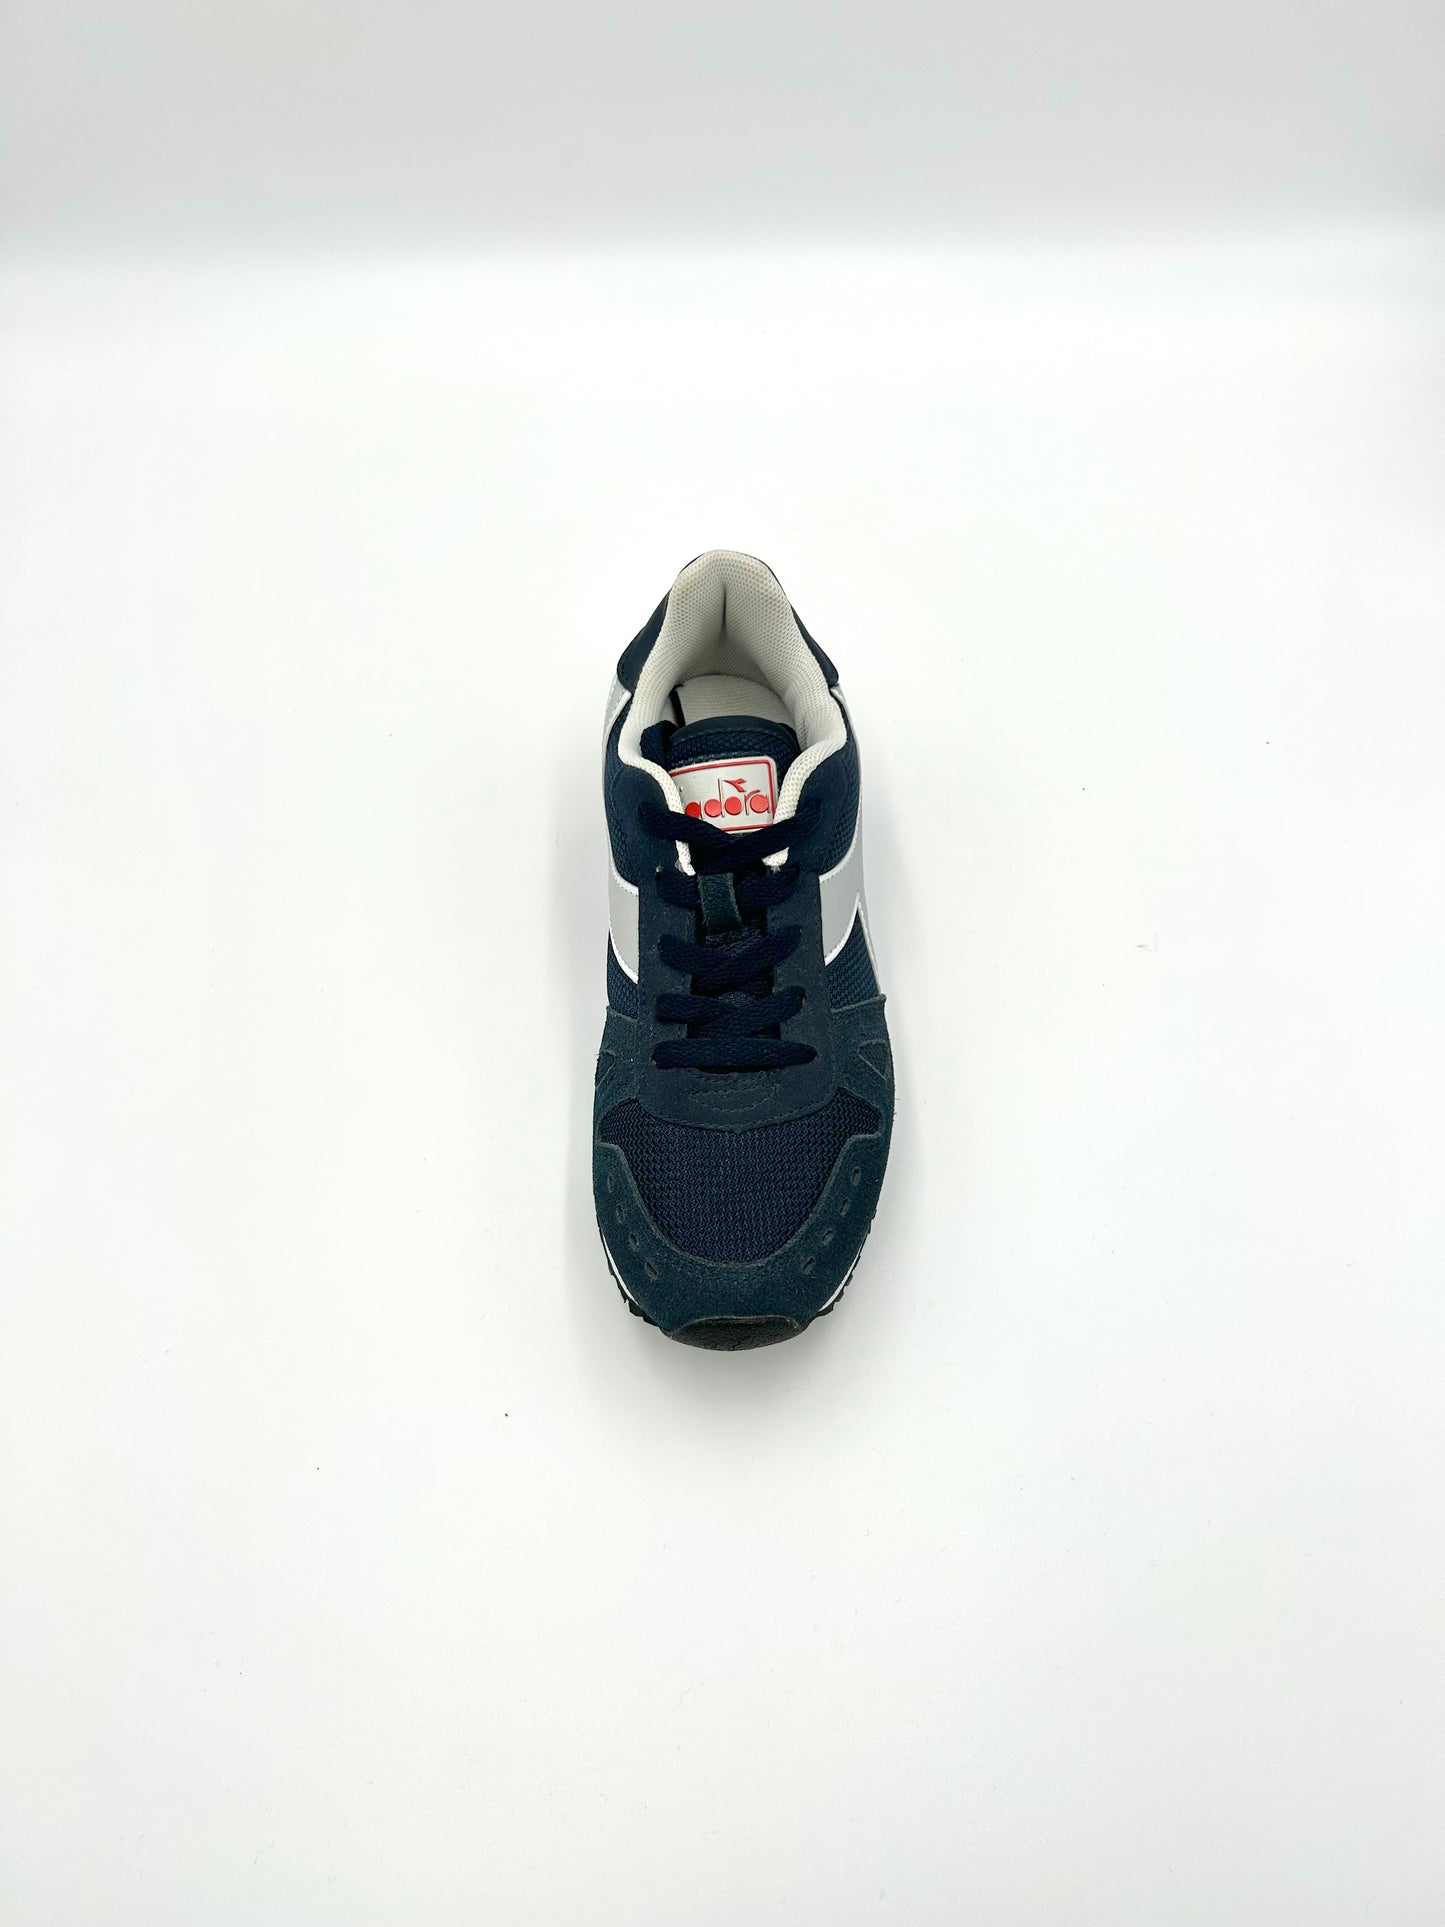 Diadora Sneakers Simple run GS - blue and grey - Diadora